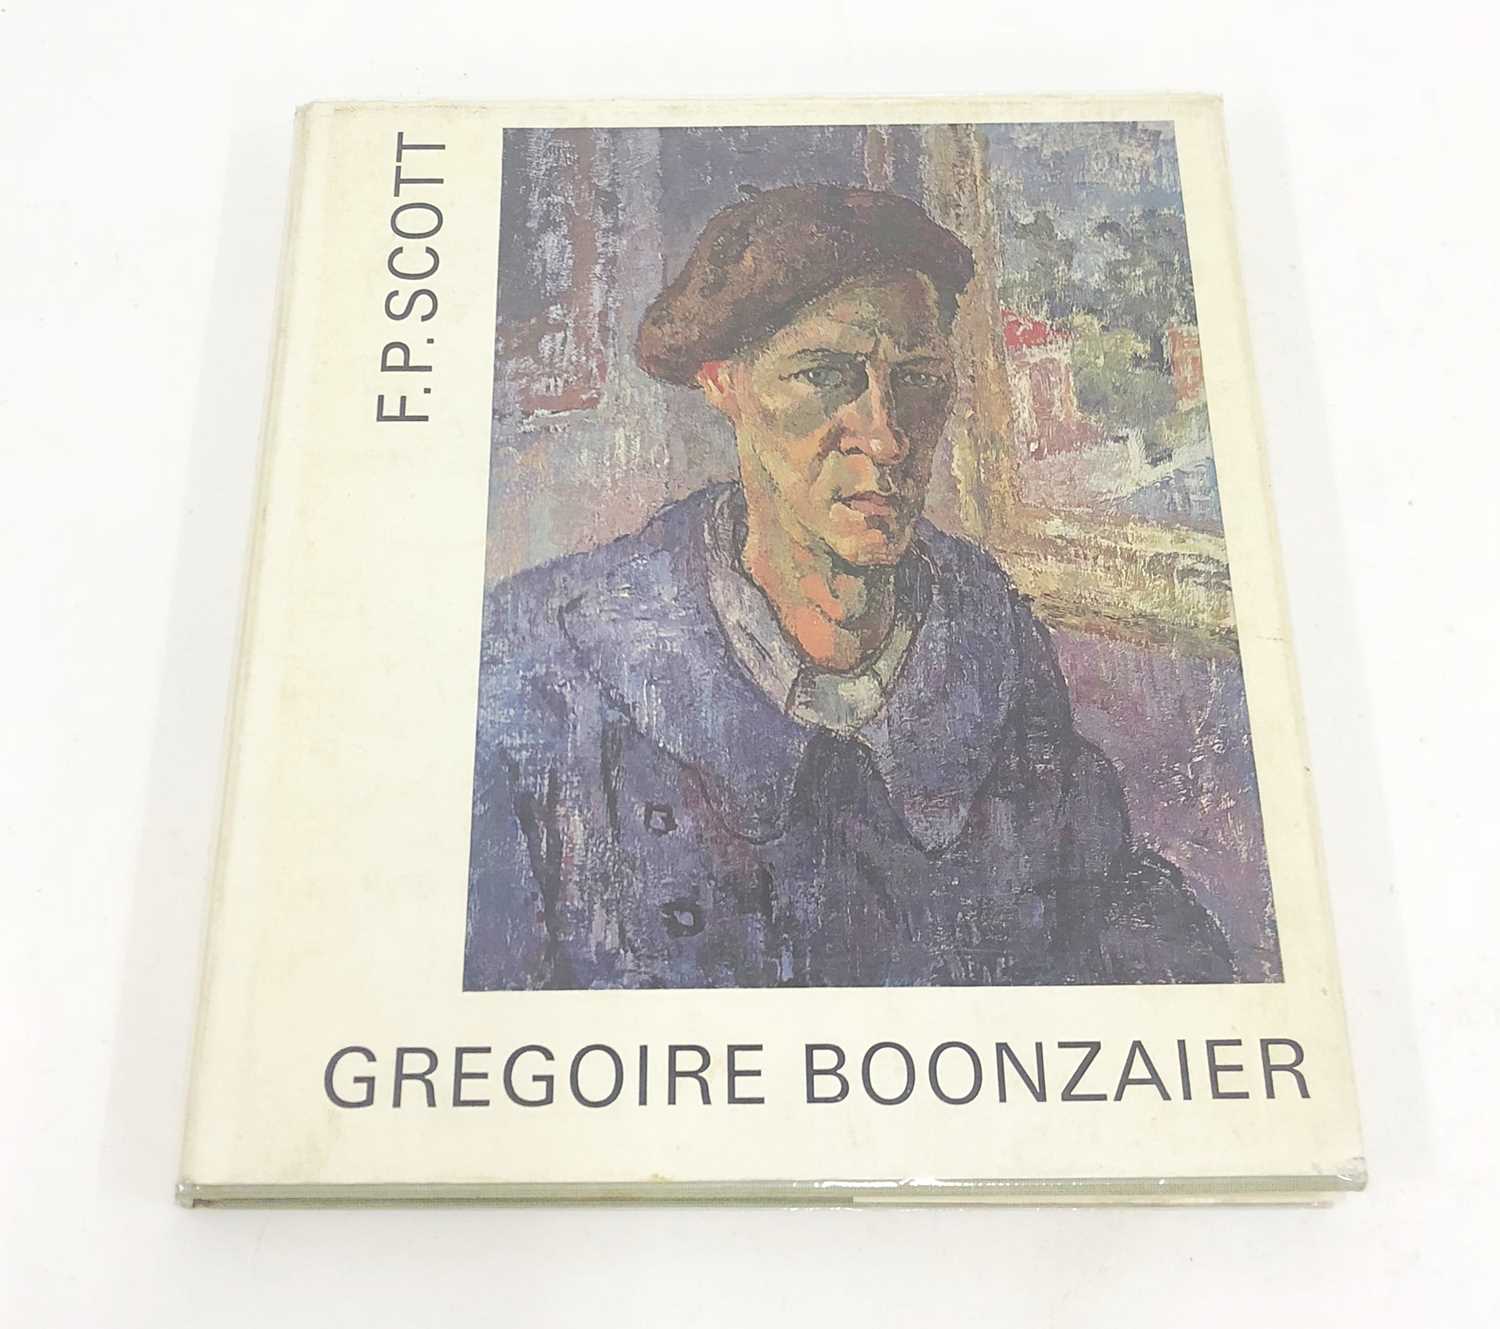 Lot 22 - Scott, F. P. Gregoire Boonzaier